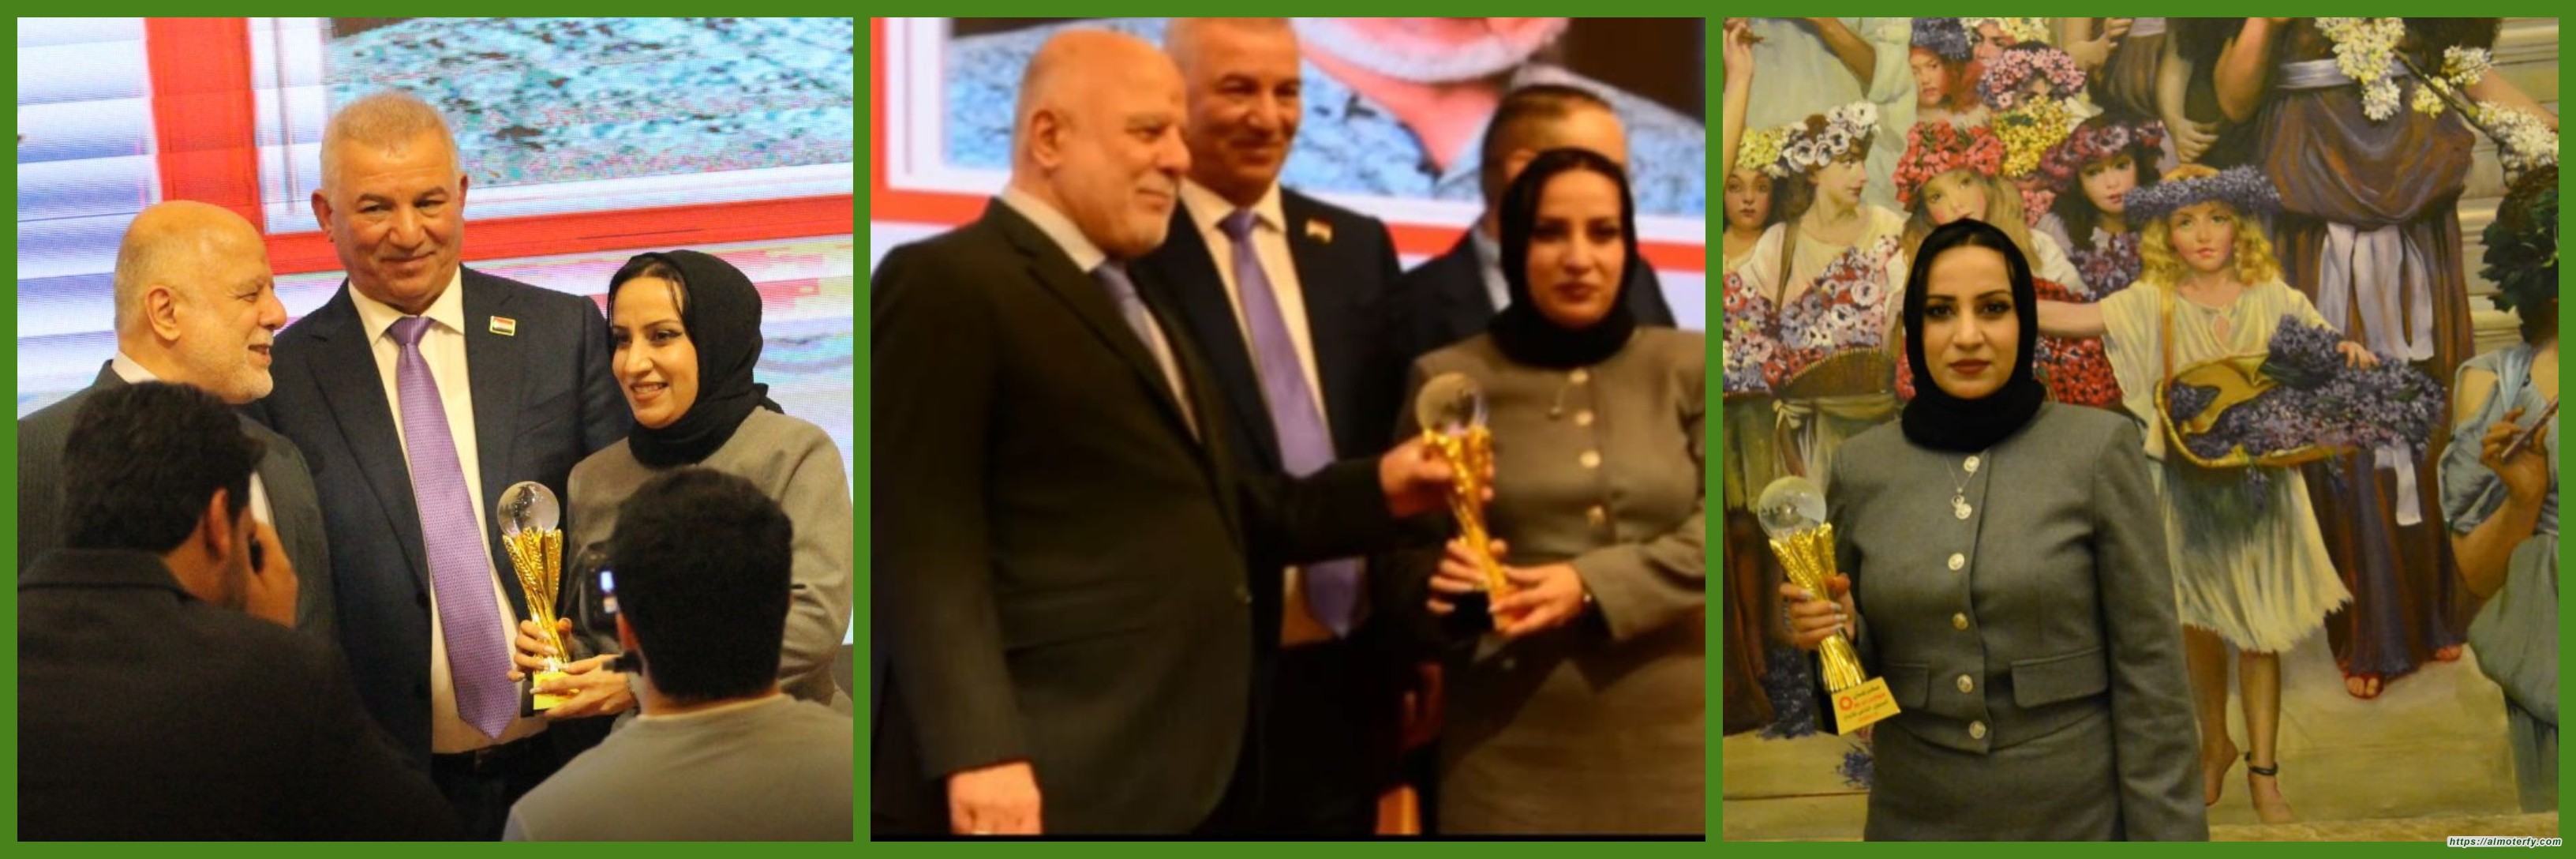 تكريم الناقدة العراقية الدكتورة موج يوسف تحت شعار (الإنجاز المبدع تميز ومسؤولية)